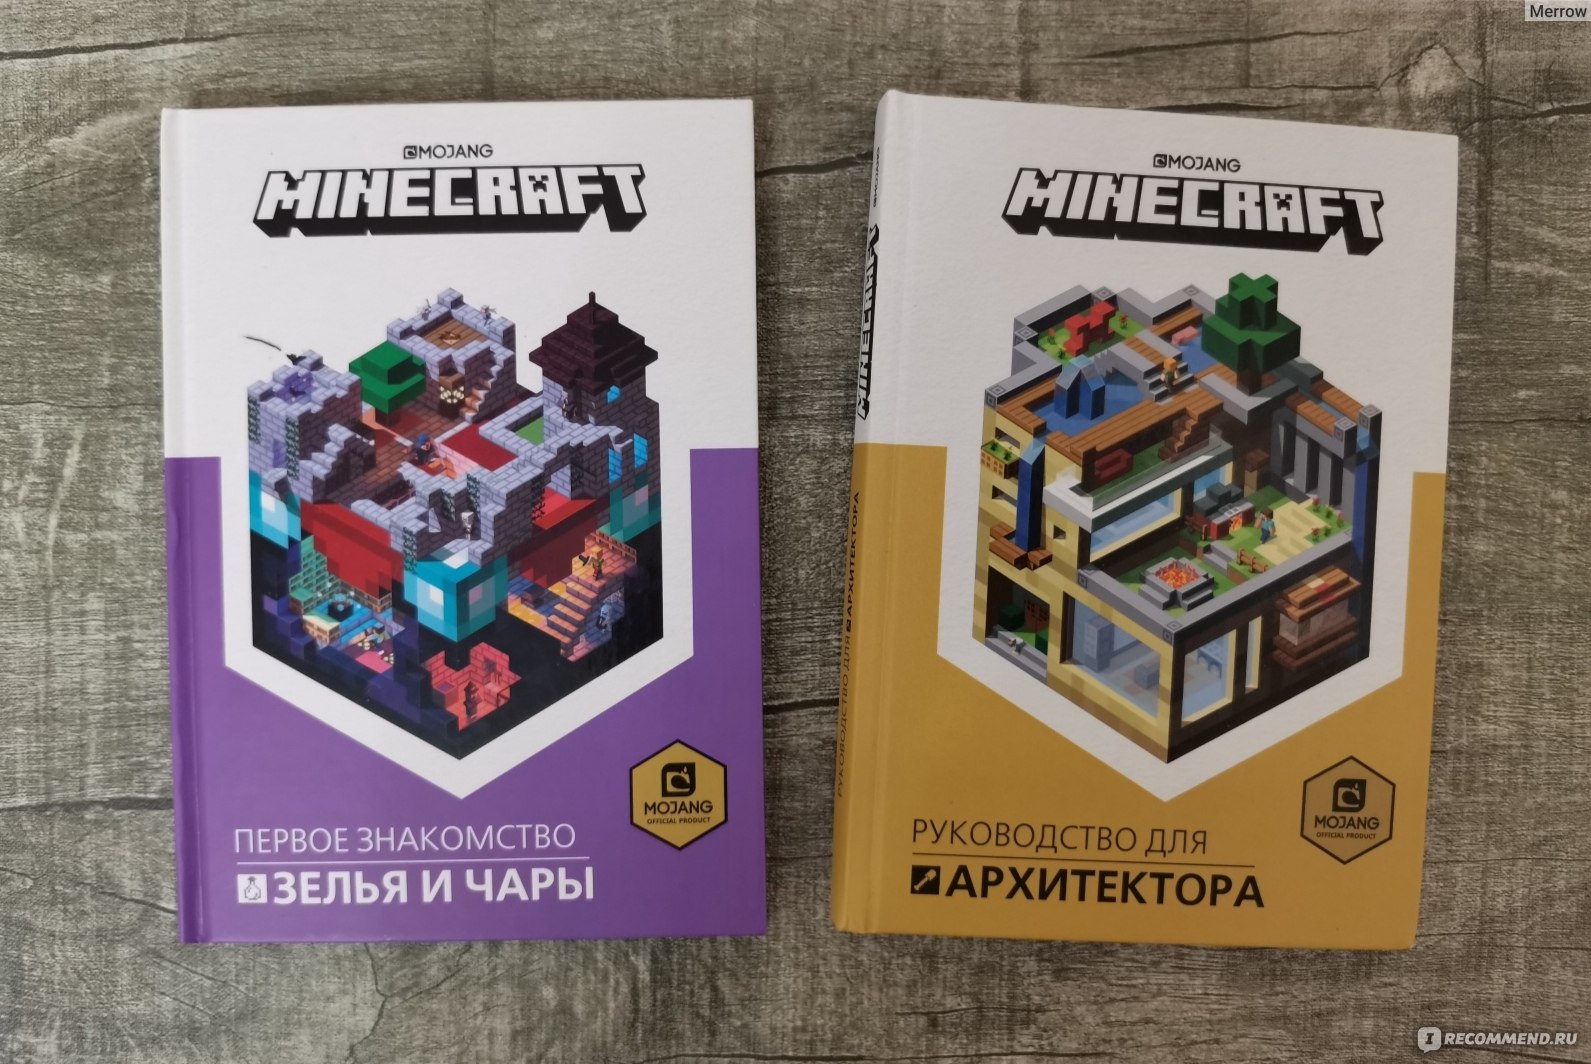 Суть книги майнкрафт. Книги по майнкрафту. Minecraft книга. Книга маенкравтат. Книга майнкрафт руководство для архитектора.